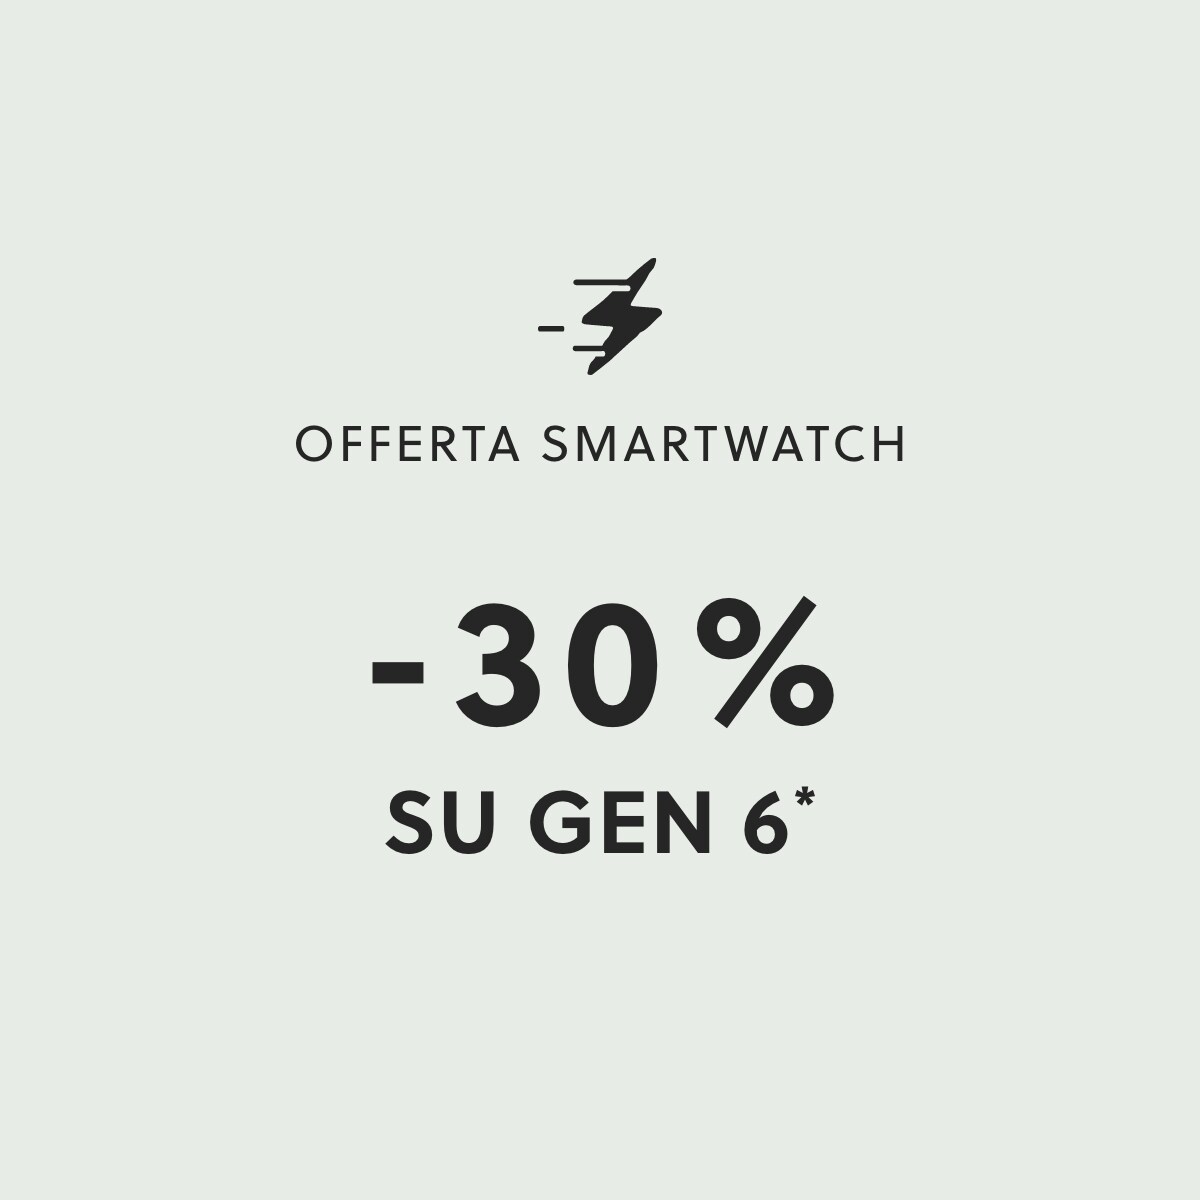 OFFERTA SMARTWATCH -30% SU GEN 6*